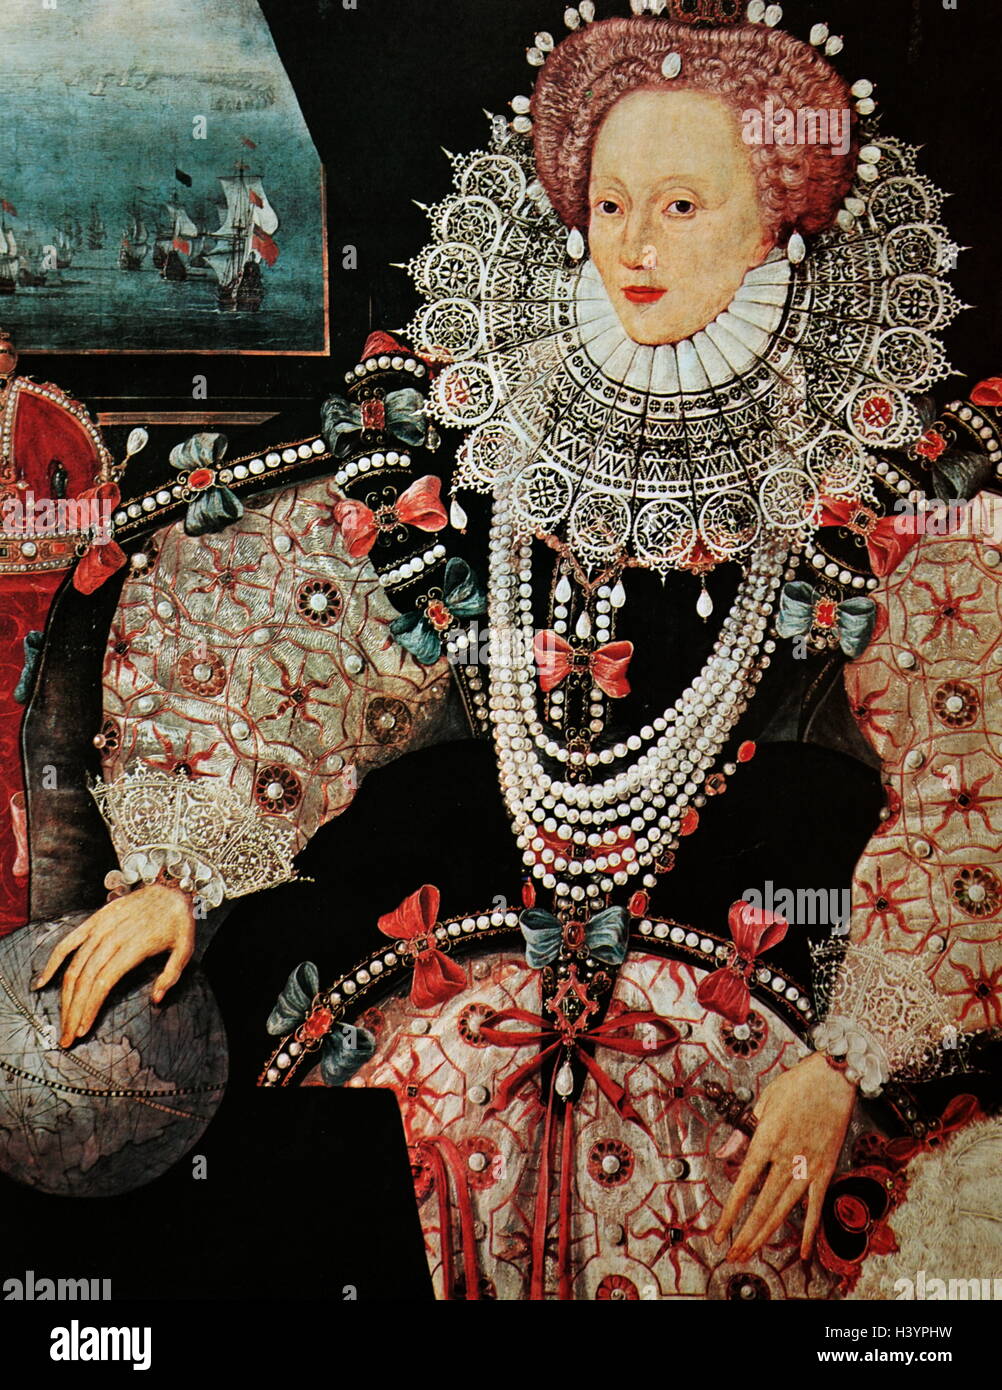 6 dimensioni! NUOVO Photo ARMADA Ritratto di "Vergine" Regina Elisabetta I d'Inghilterra 